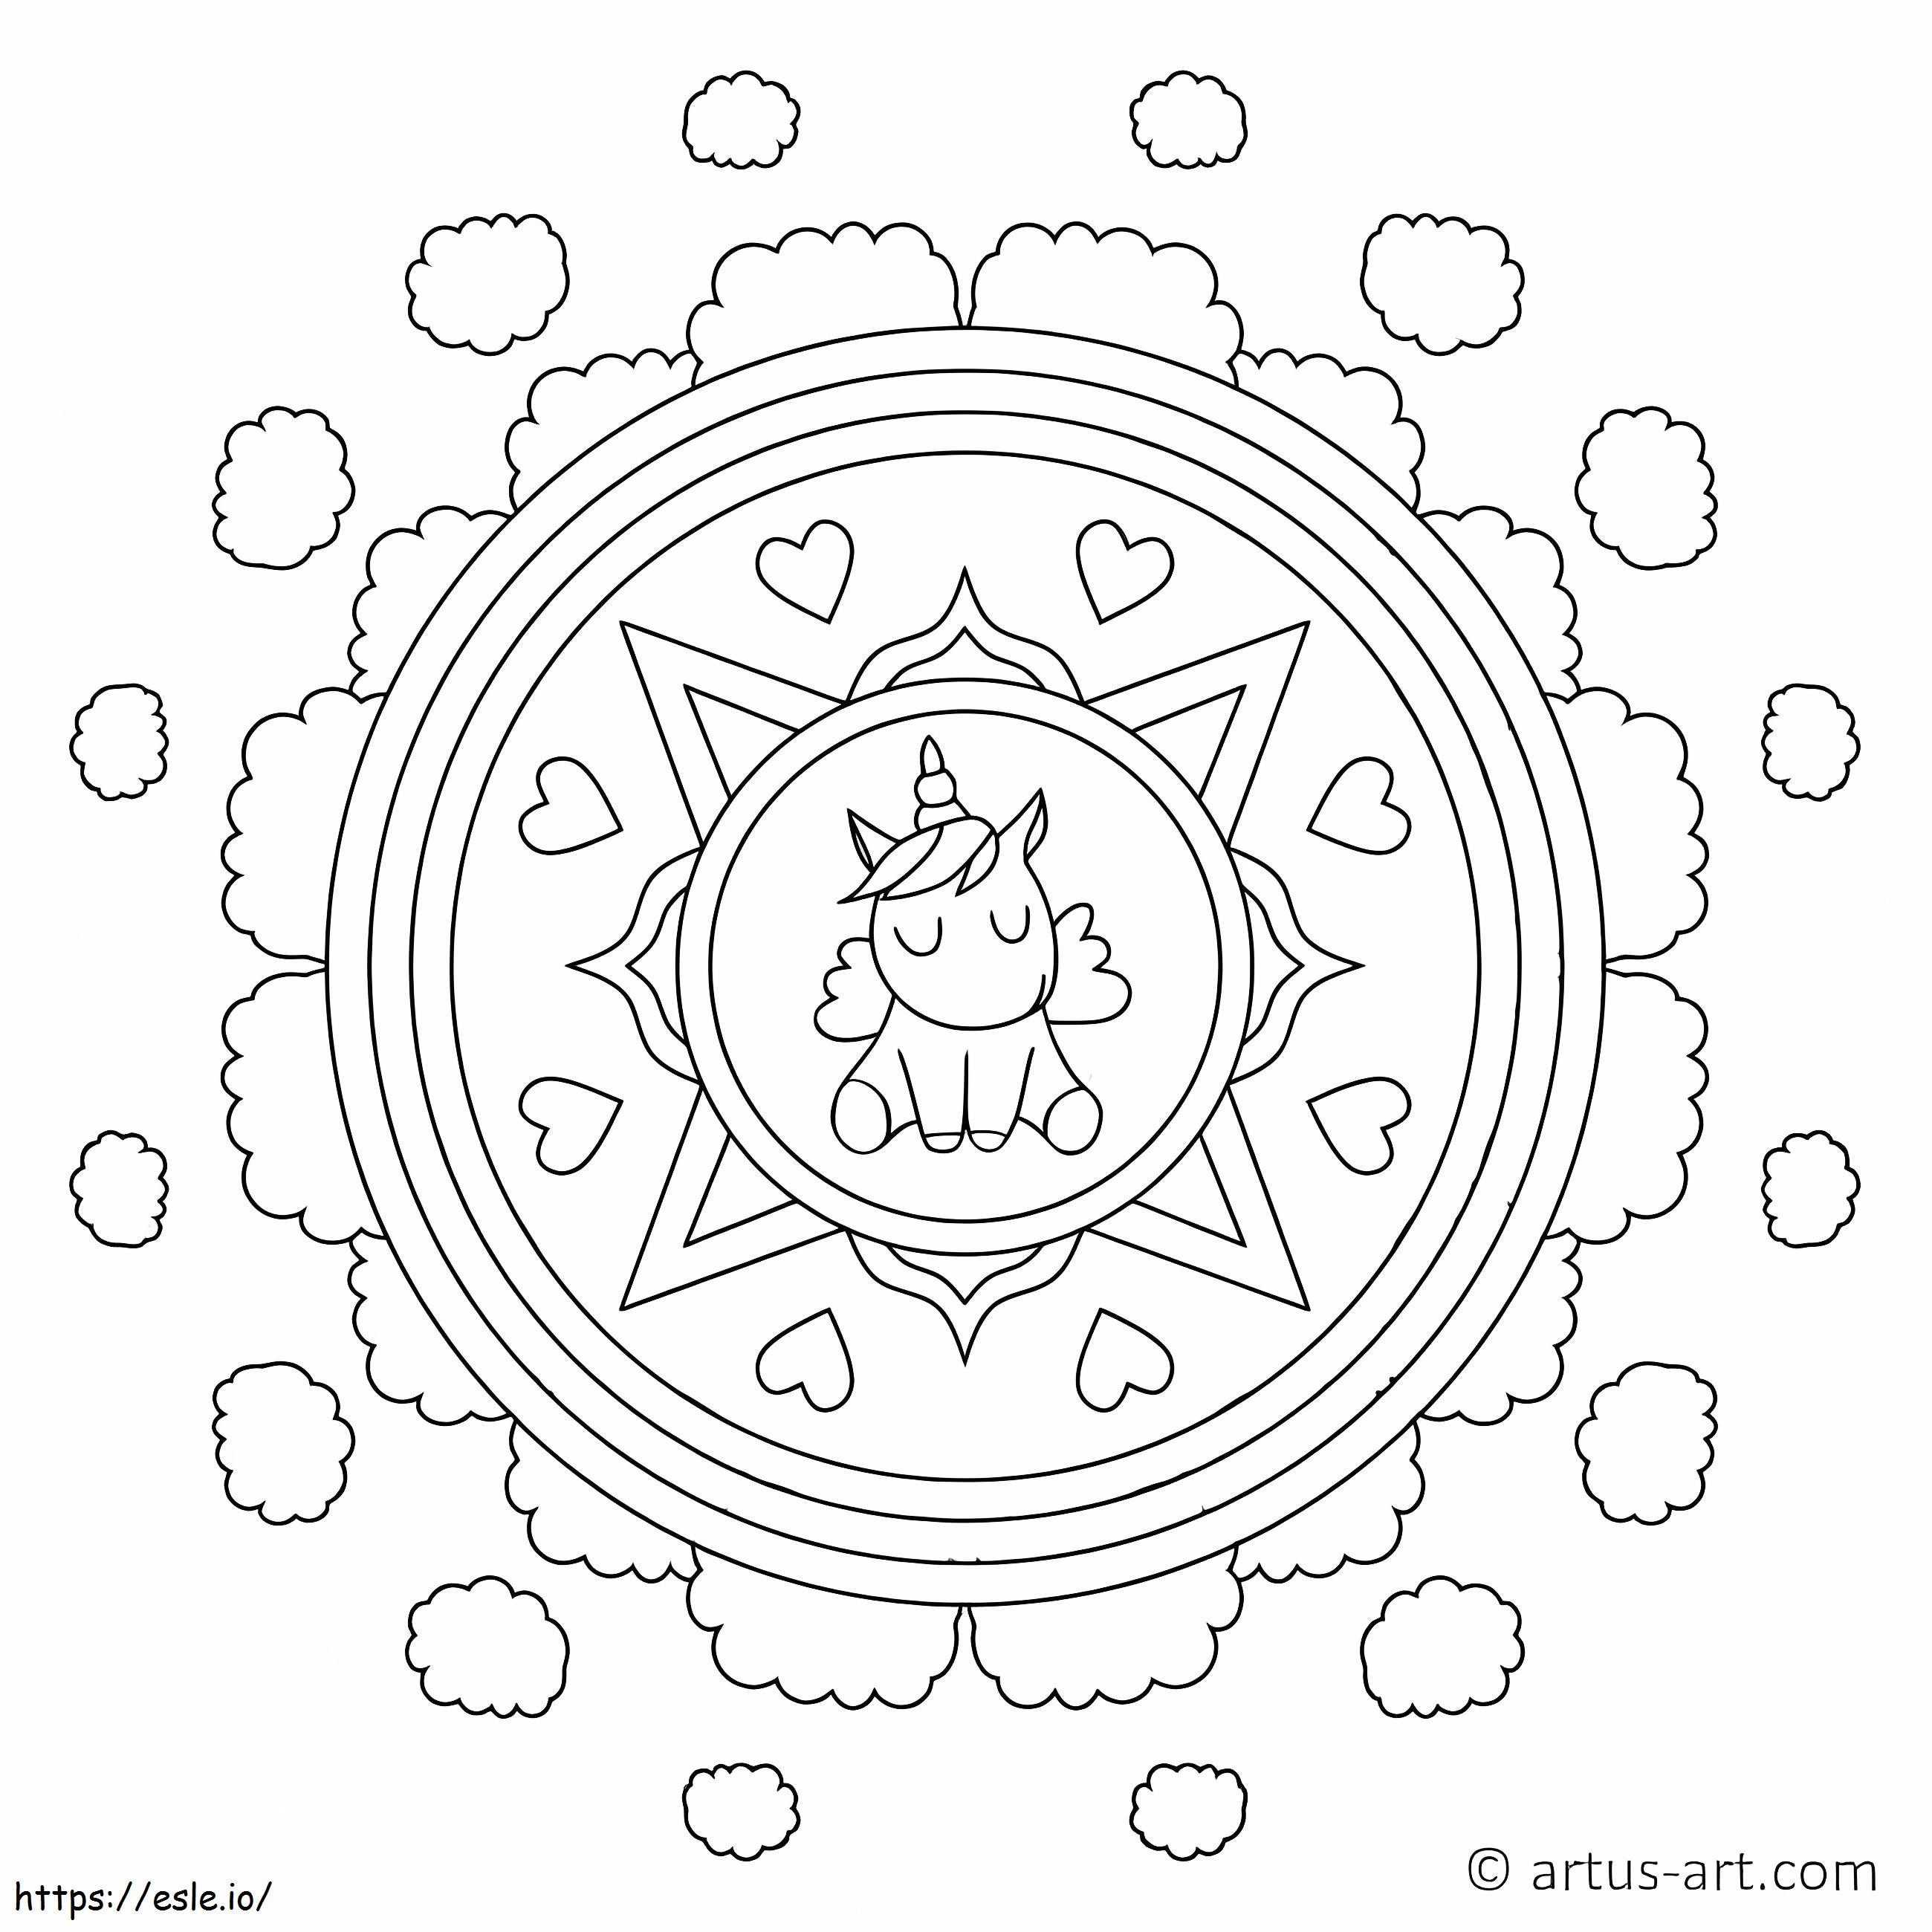 Einhorn-Mandala 6 ausmalbilder